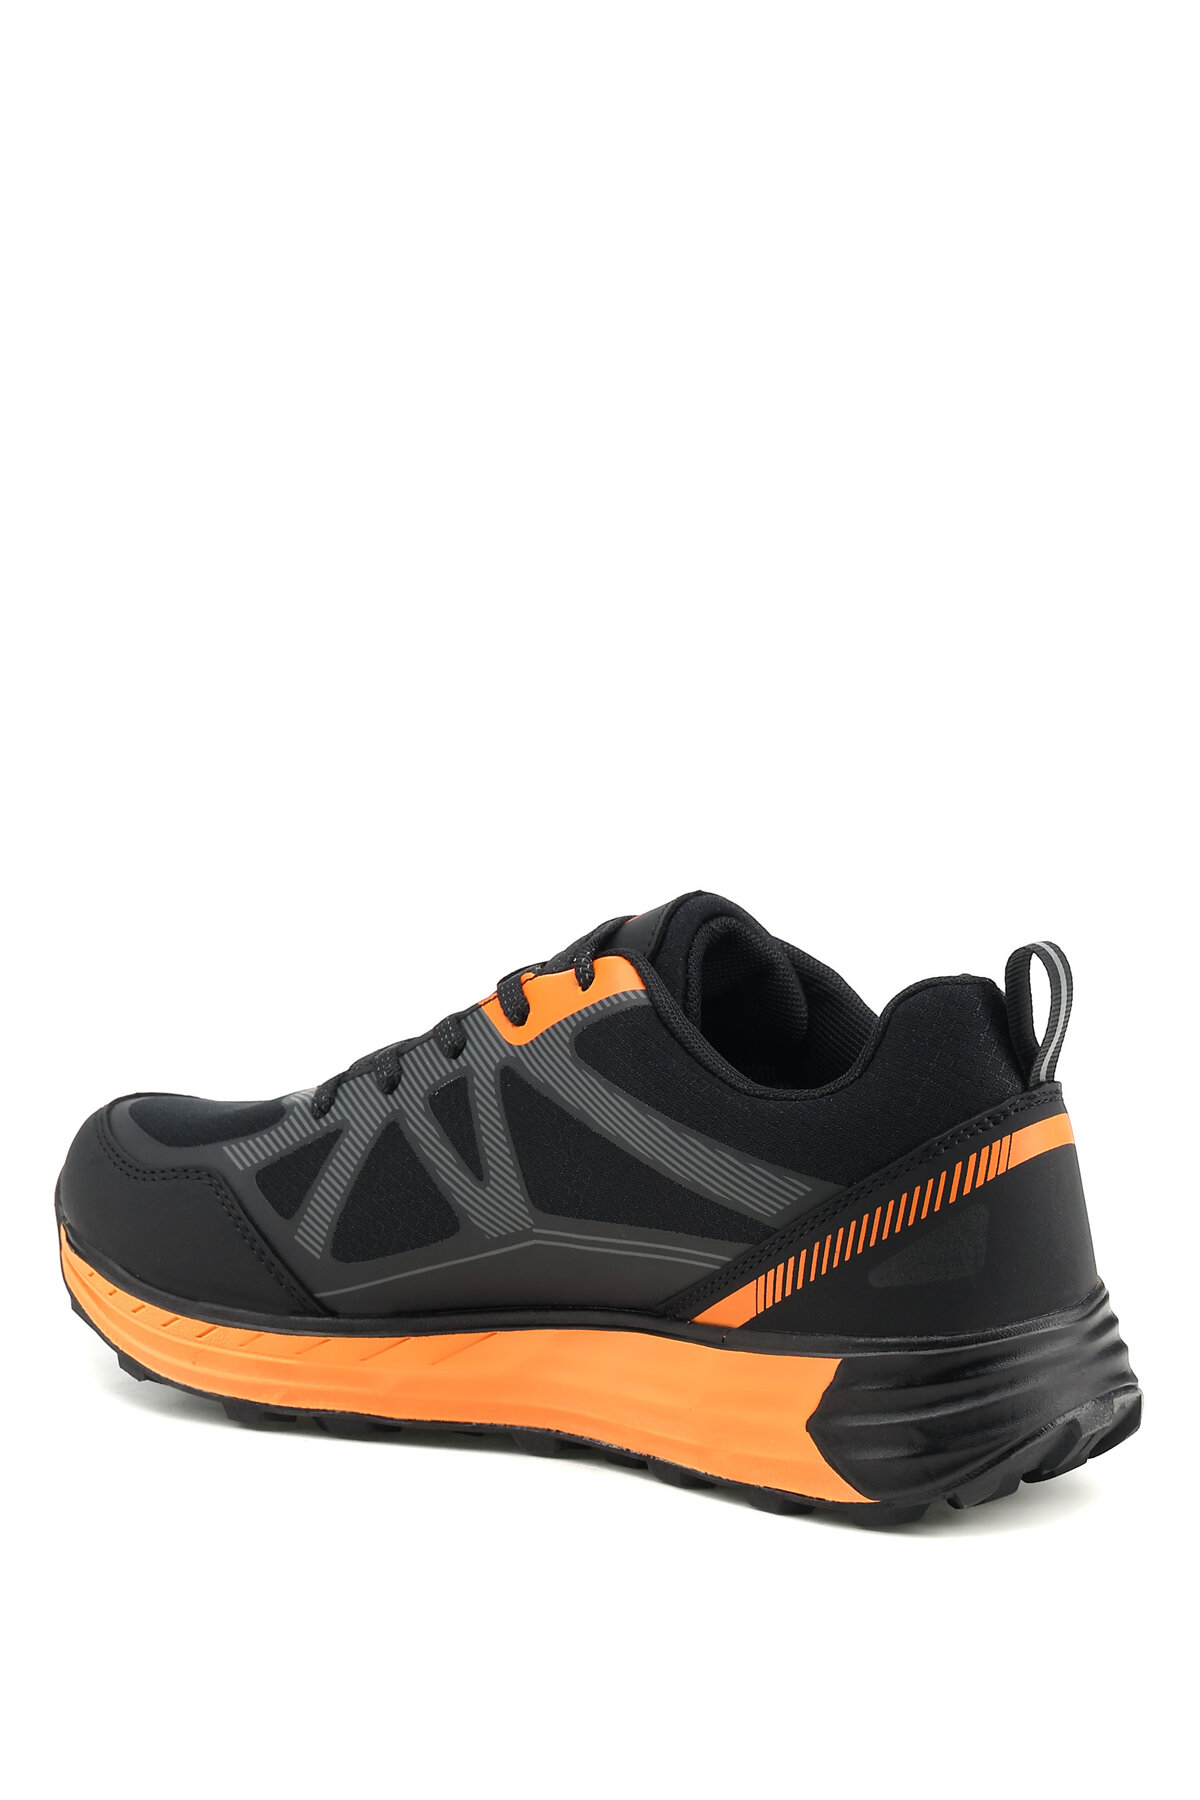 کفش طبیعت گردی مردانه لامبرجک مدل Enduro رنگ مشکی - نارنجی